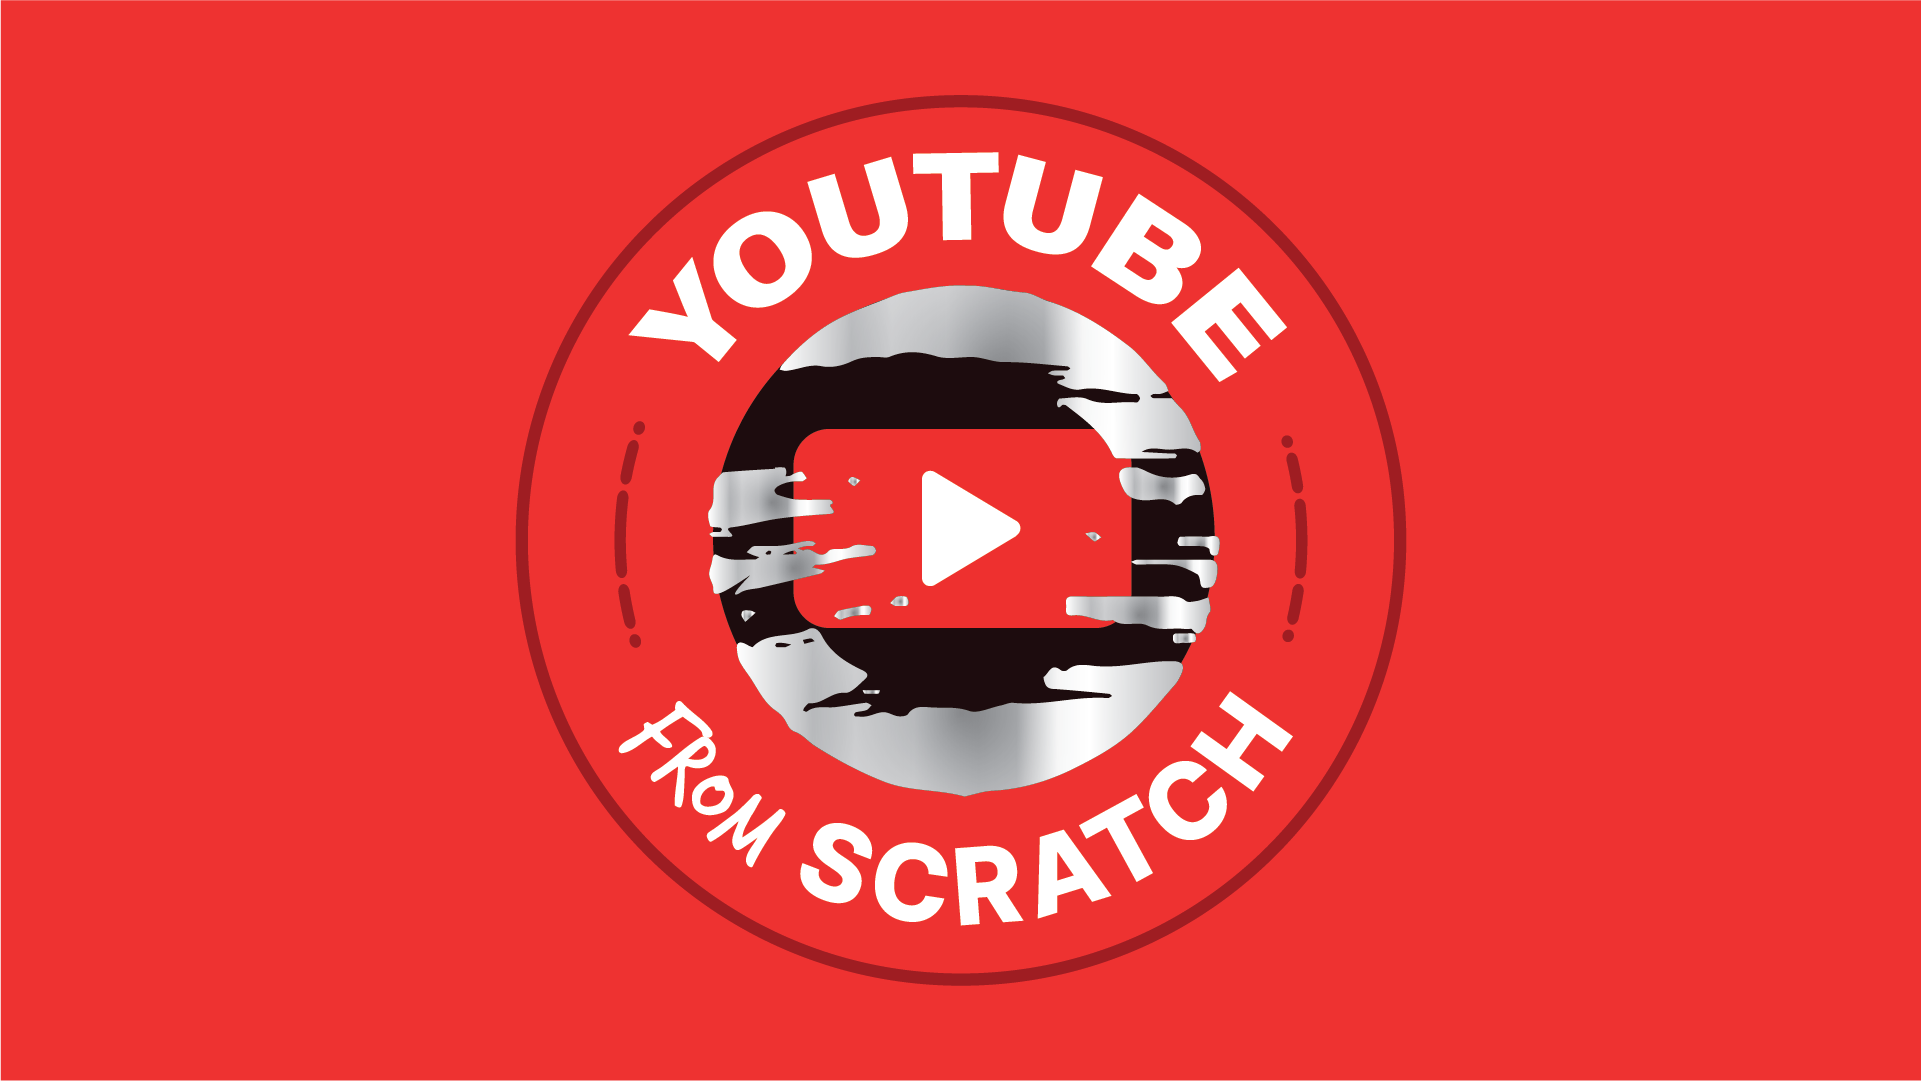 MUST WATCH, Scratch tutorials